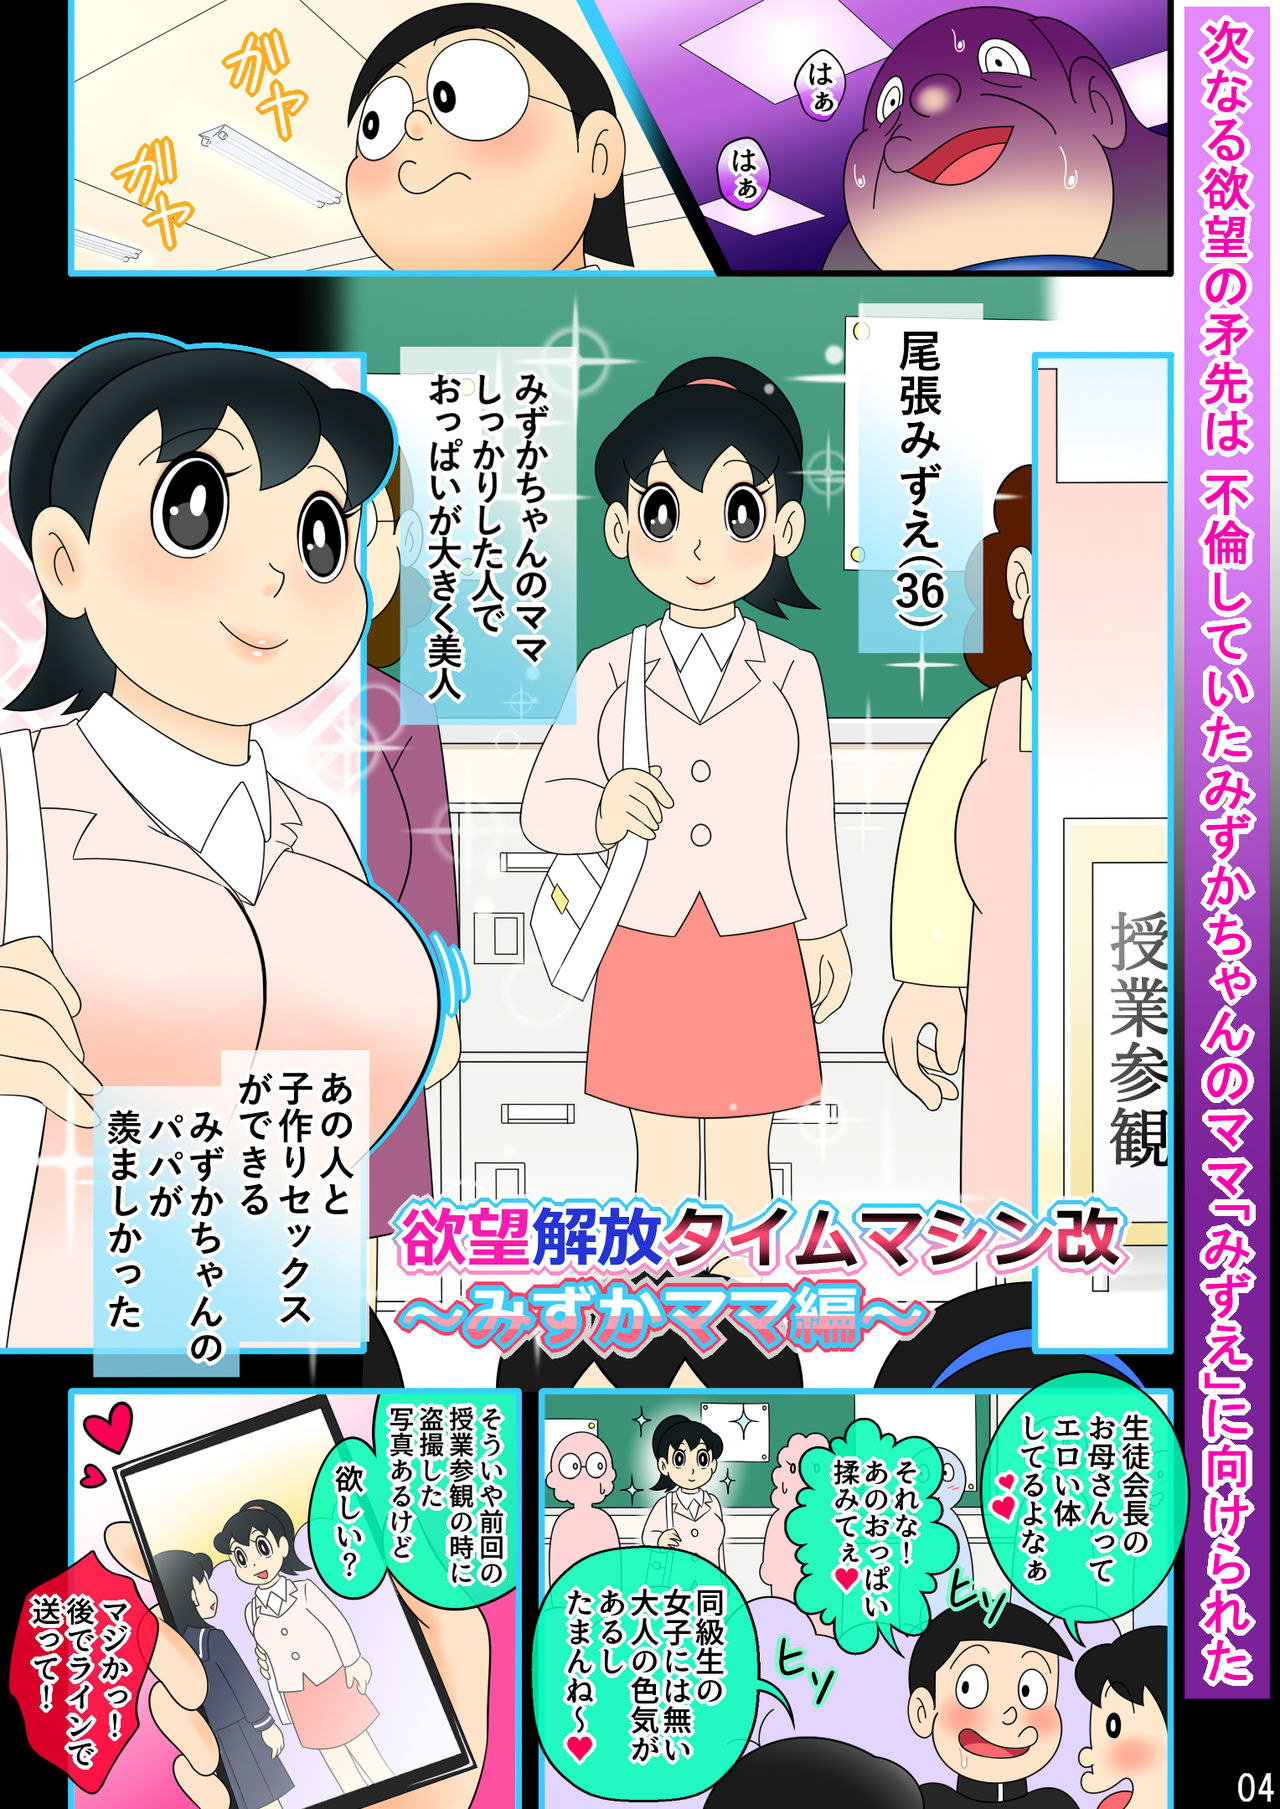 (Ho kuchi☆nanatsuboshi-chū) Yokubō kaihō taimu mashin aratame [mizu ka mama-hen] kako kaihen! Furin taku tamago& oyako dōji-ko-tsukuri (Doraemon) page 4 full